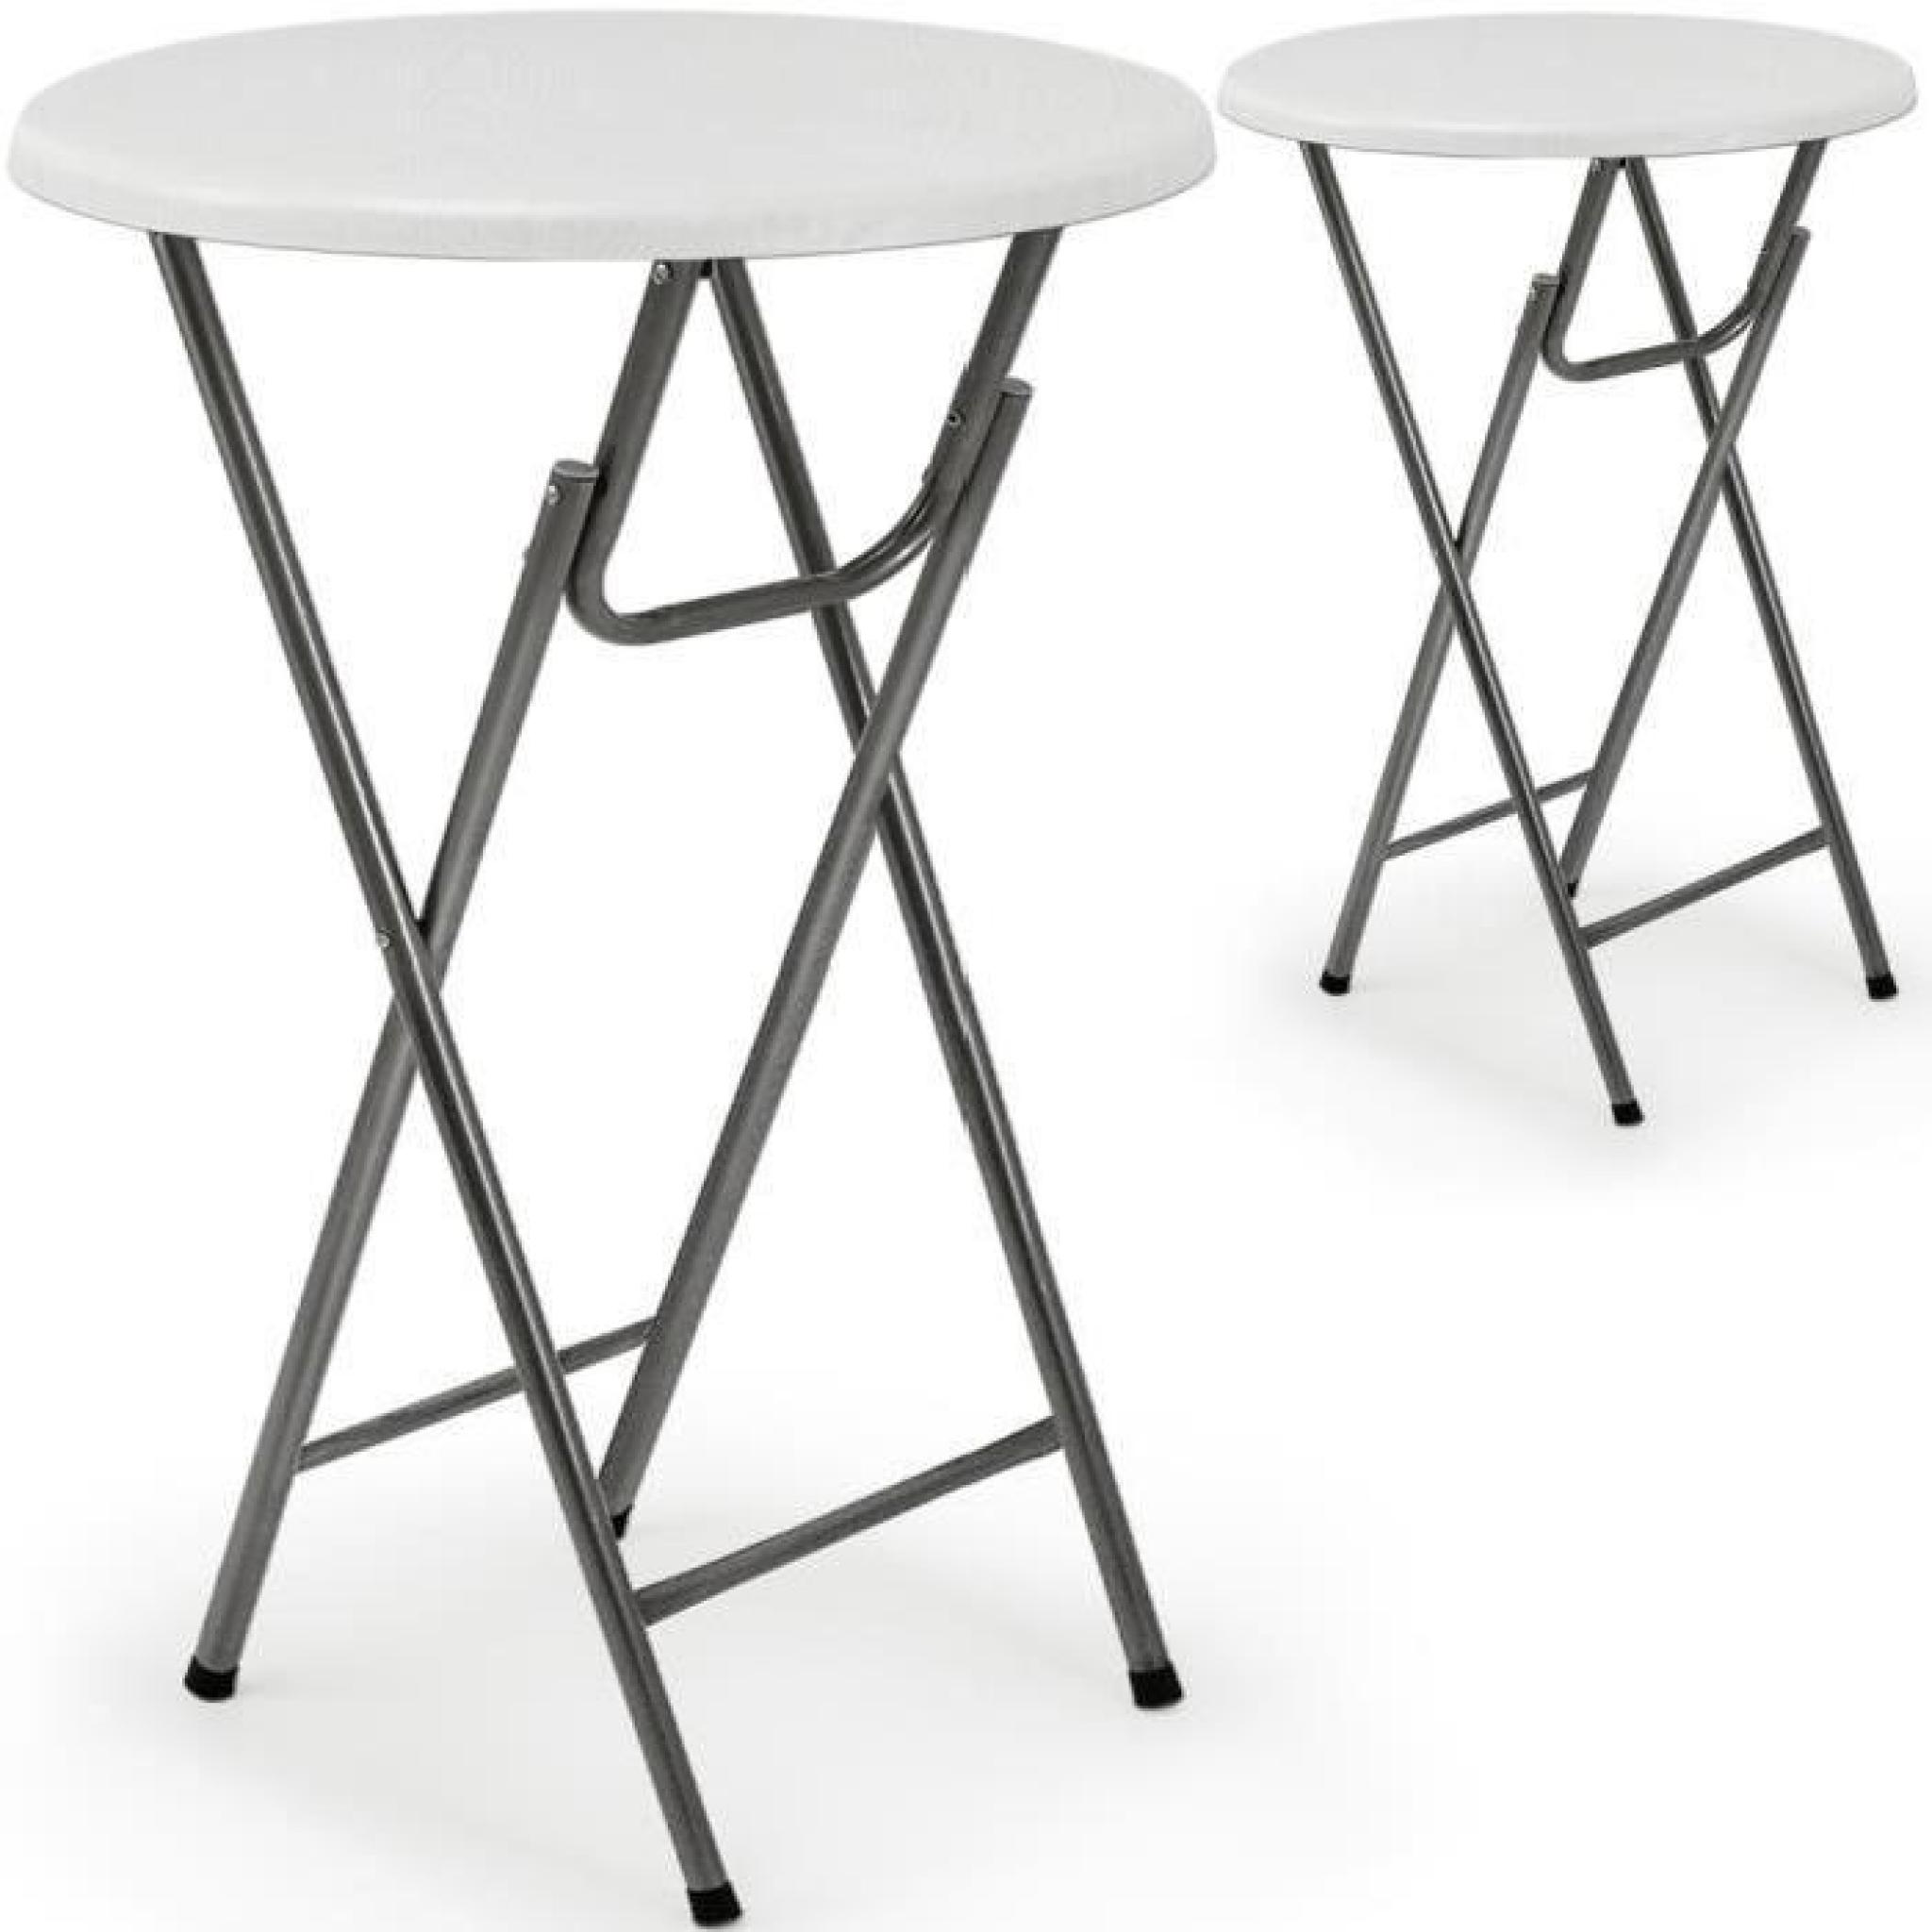 2 x Table haute pliable - Table de bar pliante en MDF blanc Aspect de bois